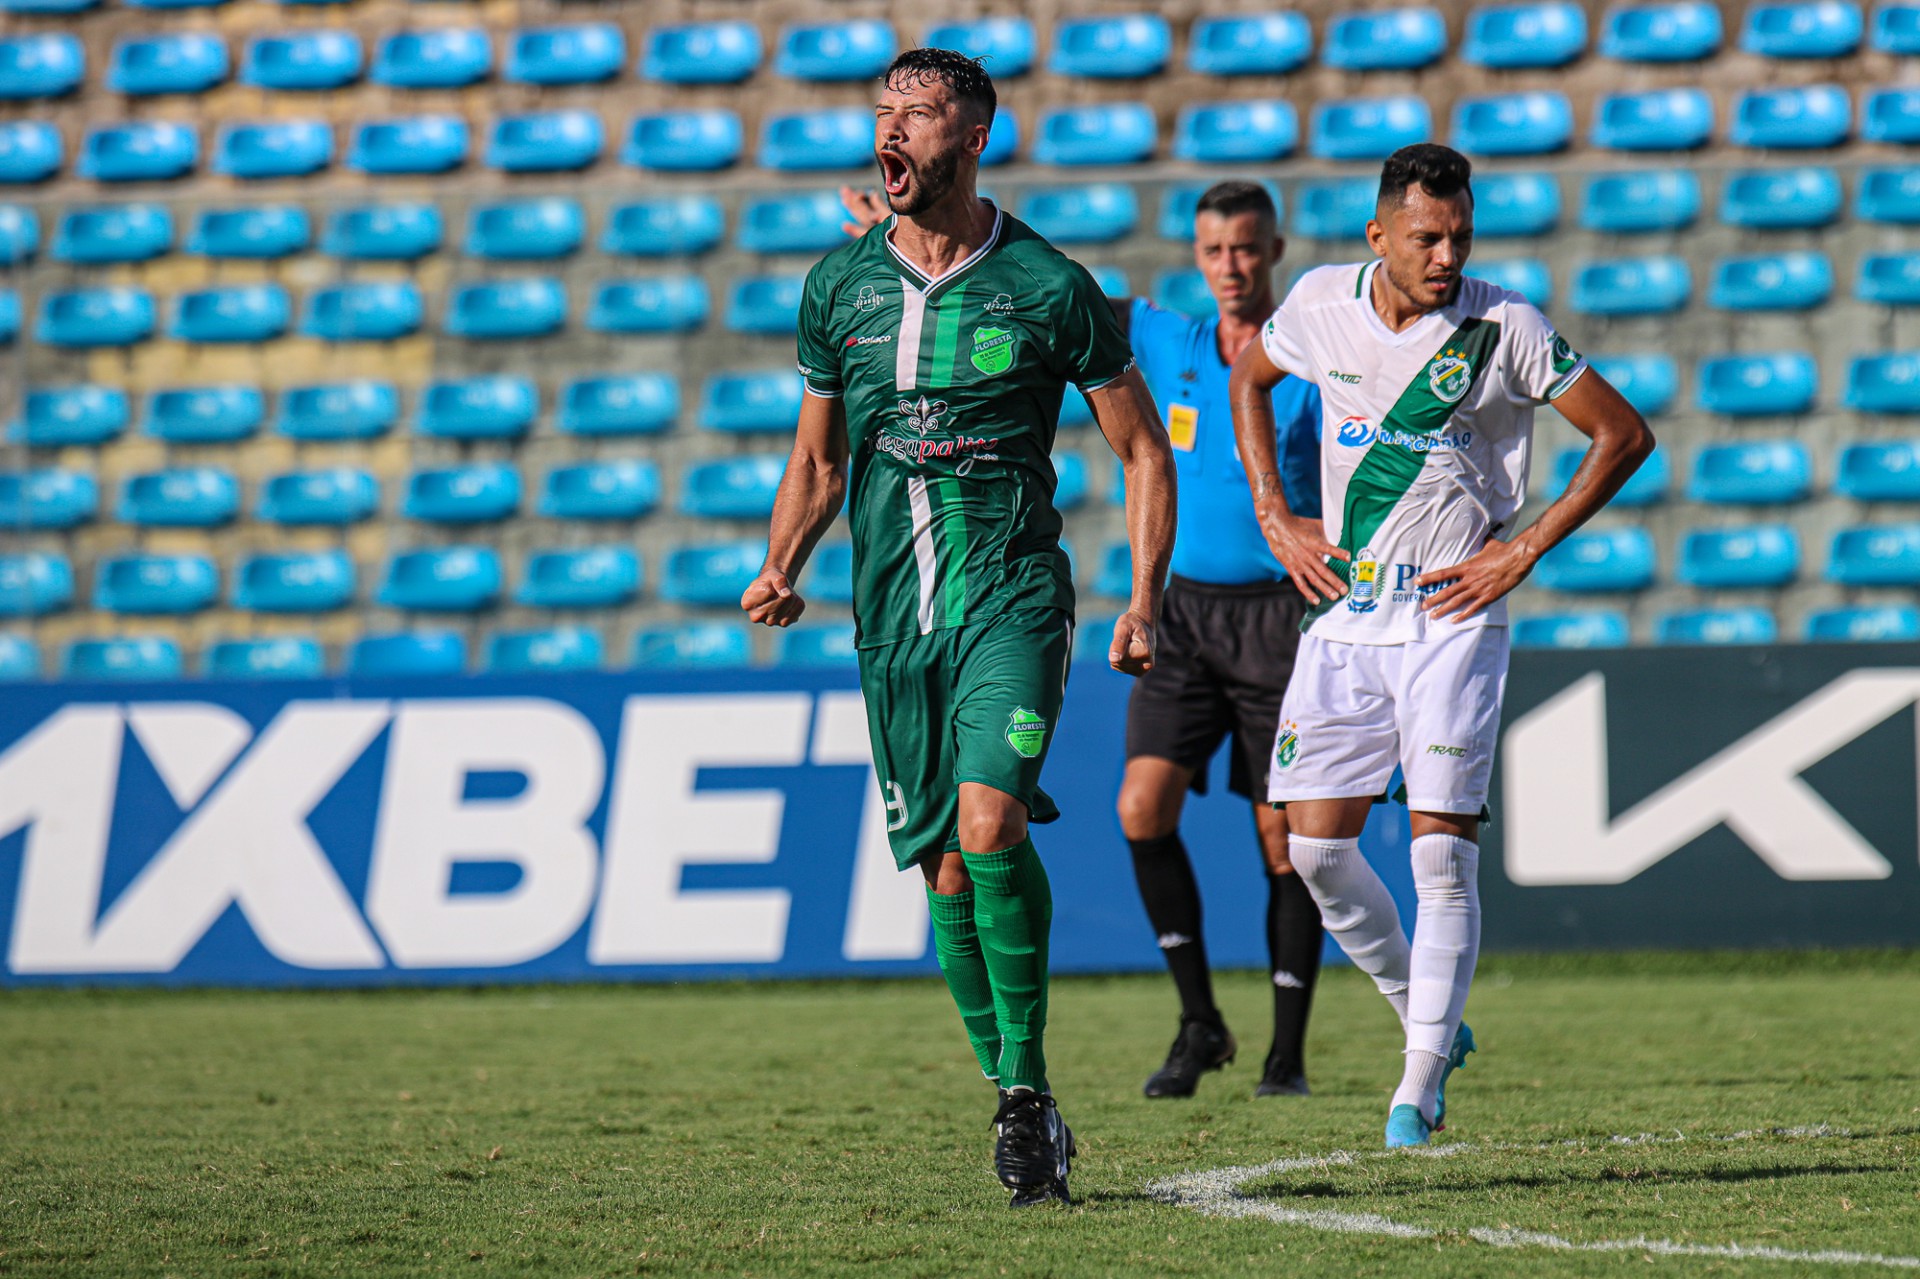 Atacante Flávio Torres comorando um gol na partida entre Floresta x Altos-PI, no Estádio Presidente Vargas (Foto: Ronaldo Oliveira/ASCOM Floresta EC)